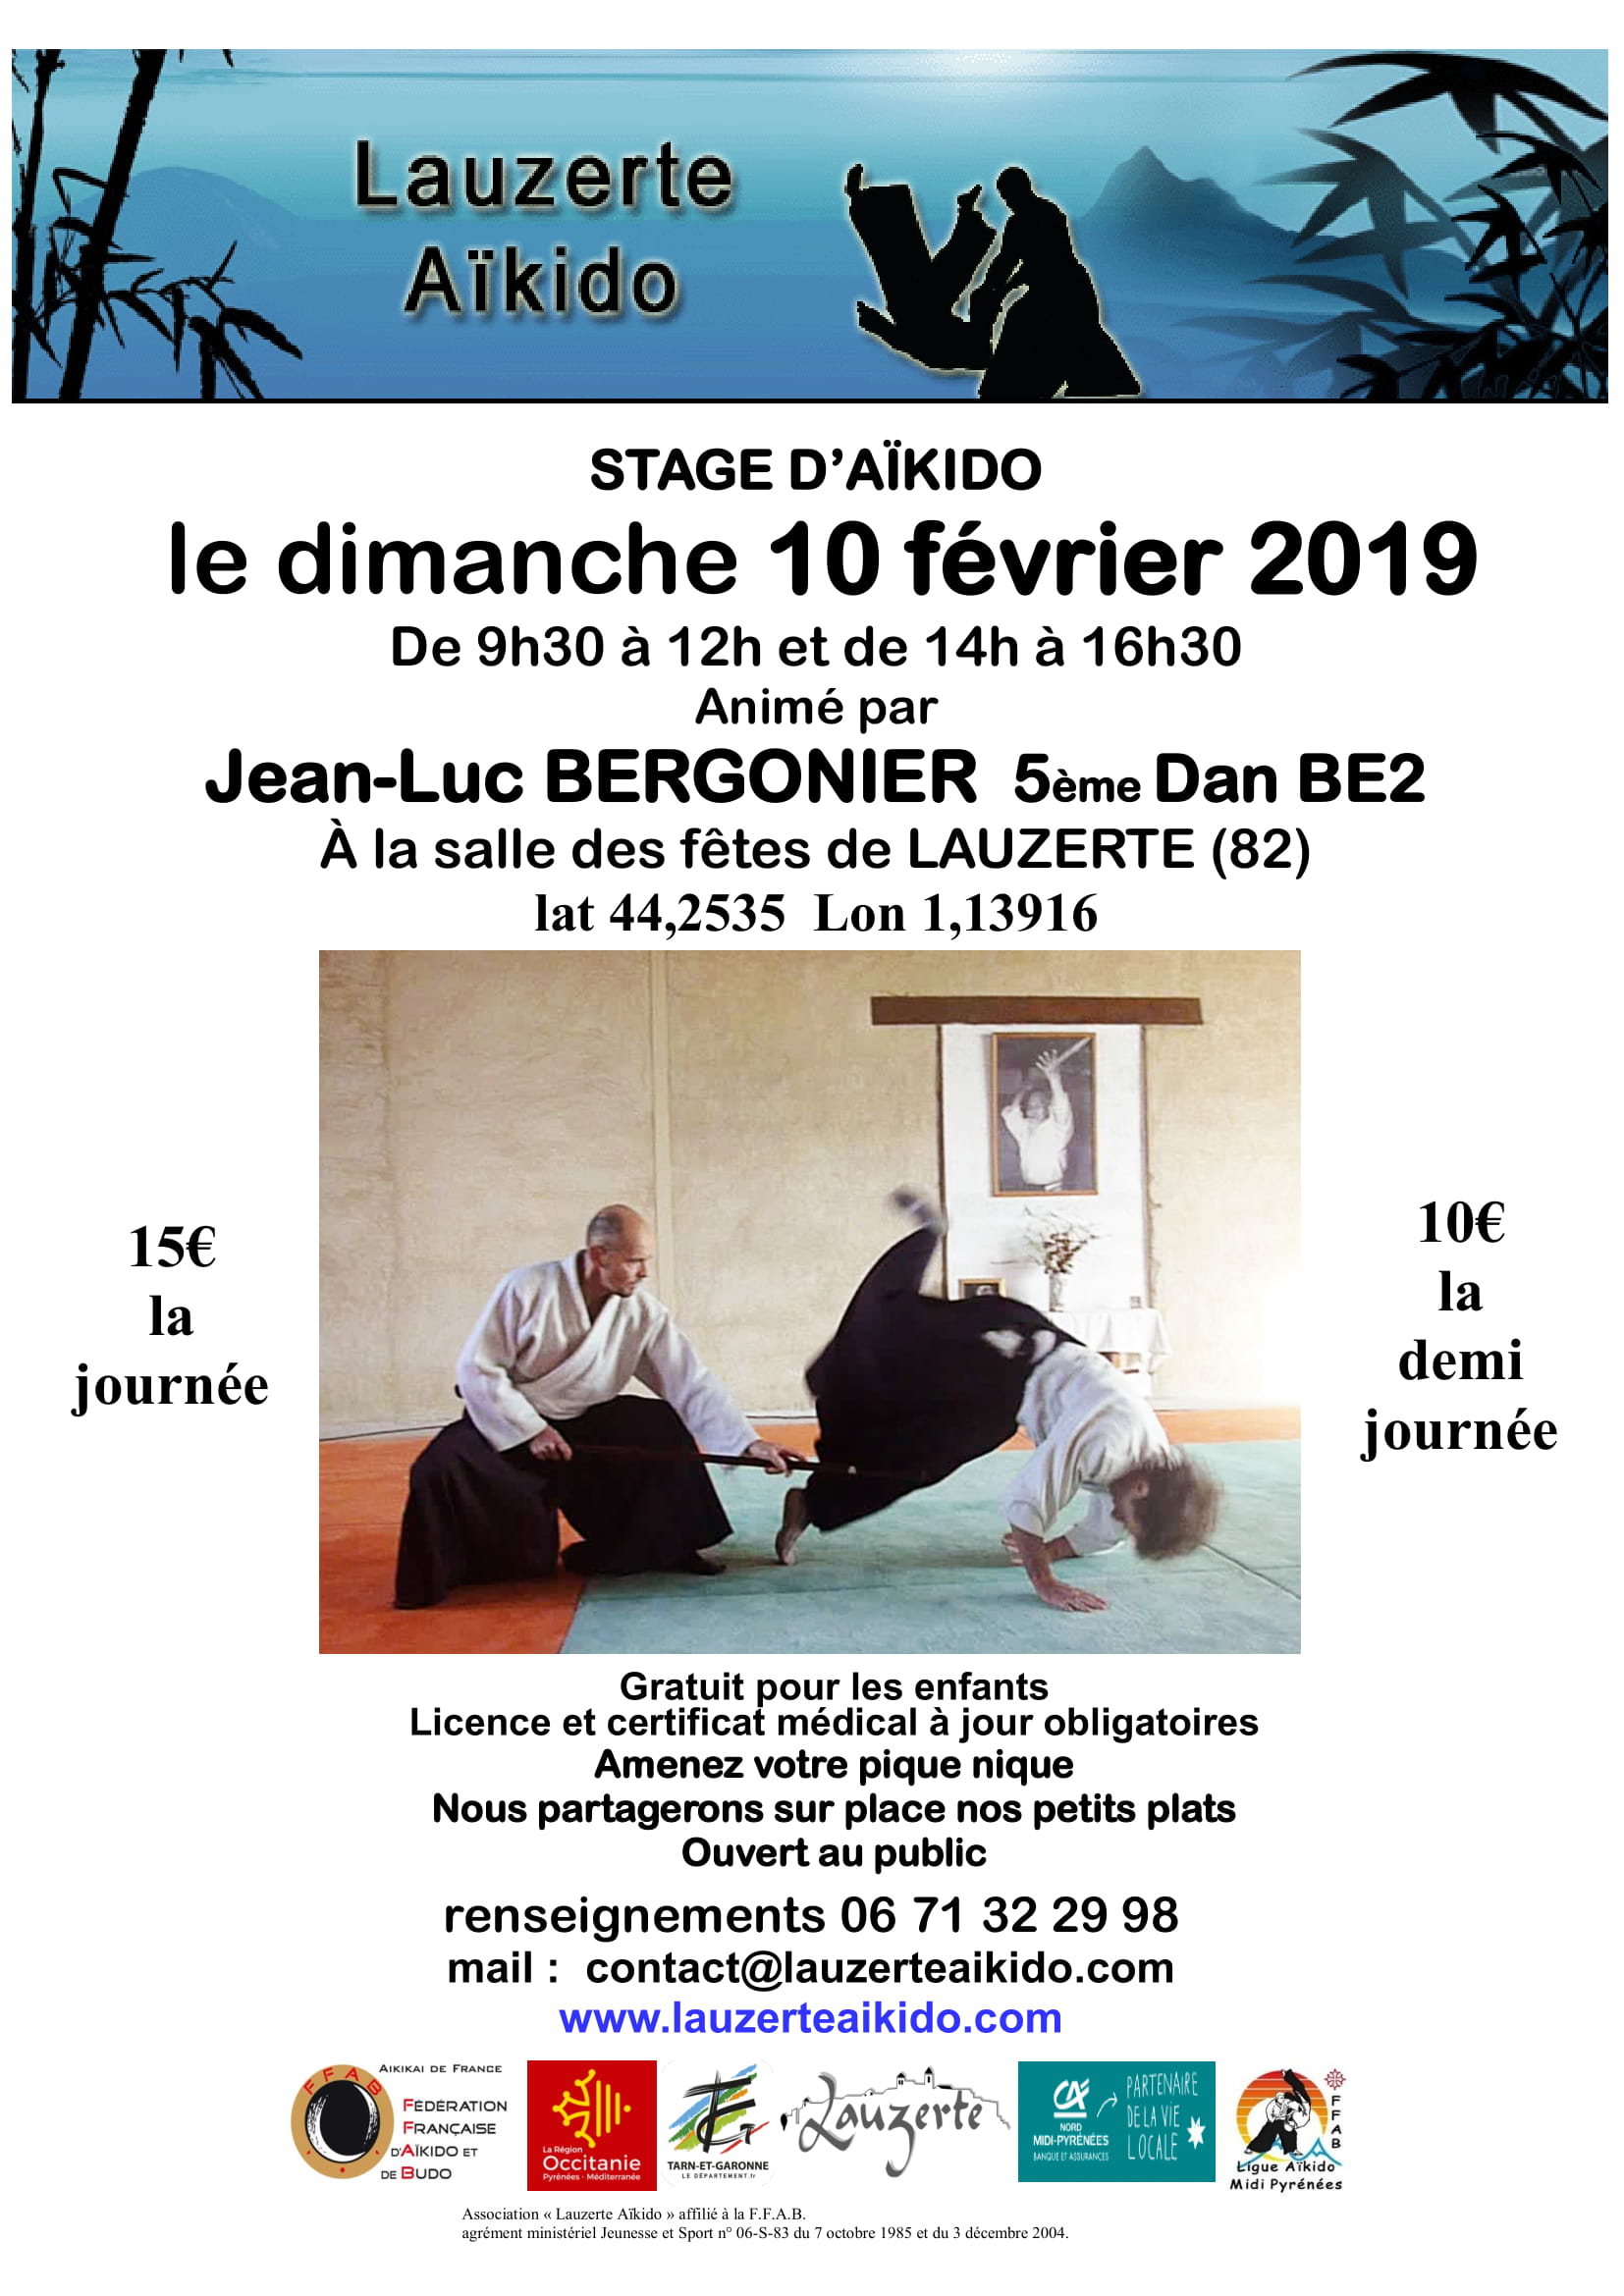 10 février Stage à Lauzerte avec Jean-Luc Bergonier 5ème dan